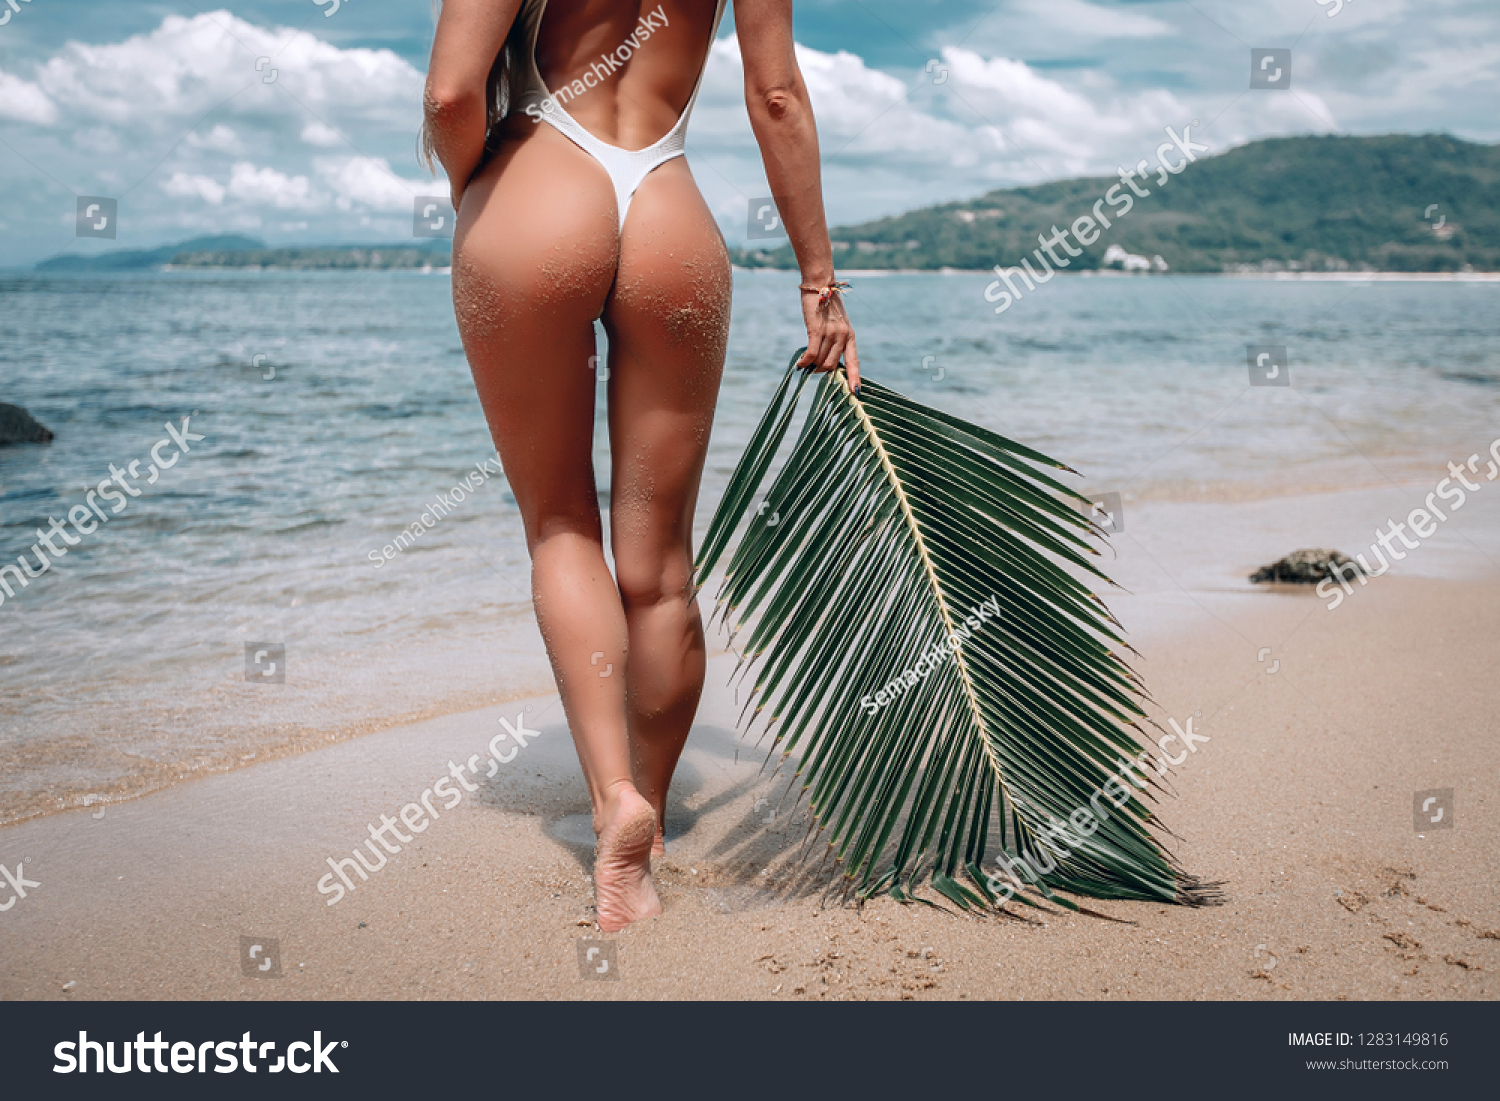 Bikini in beach naked - Nude pics